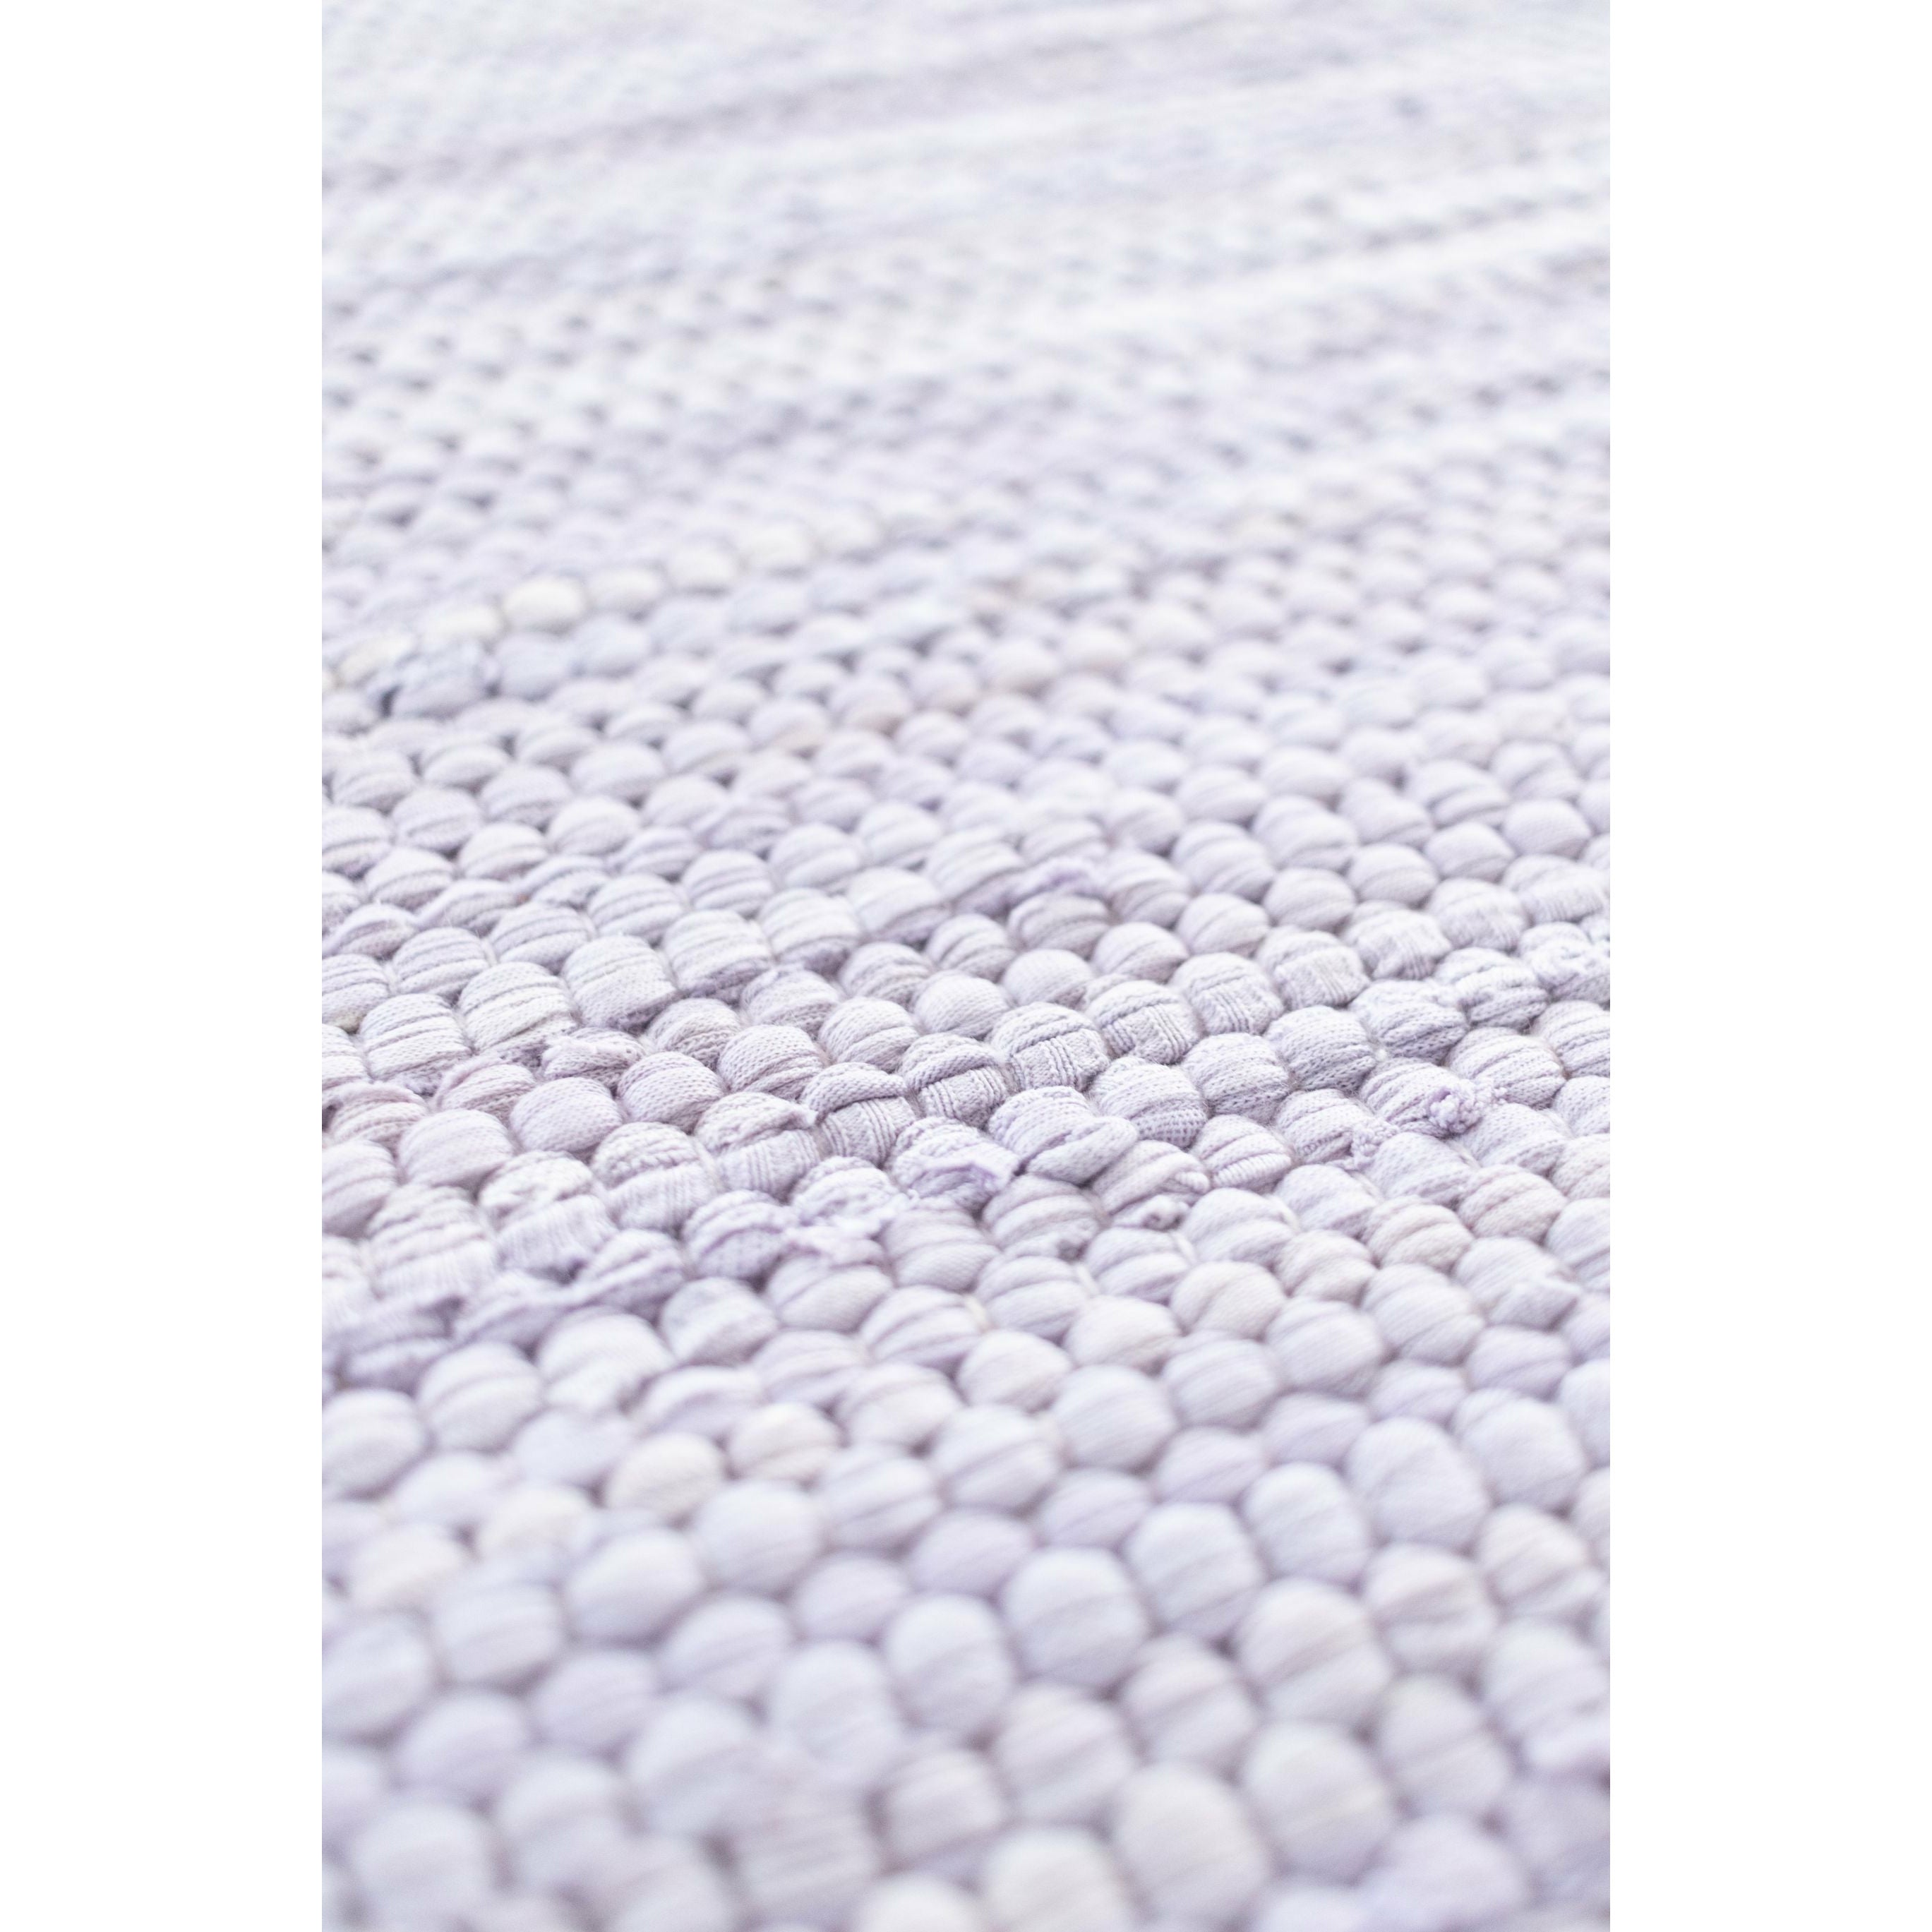 Rug Solid Katoenen tapijt 200x75 cm, lavendel